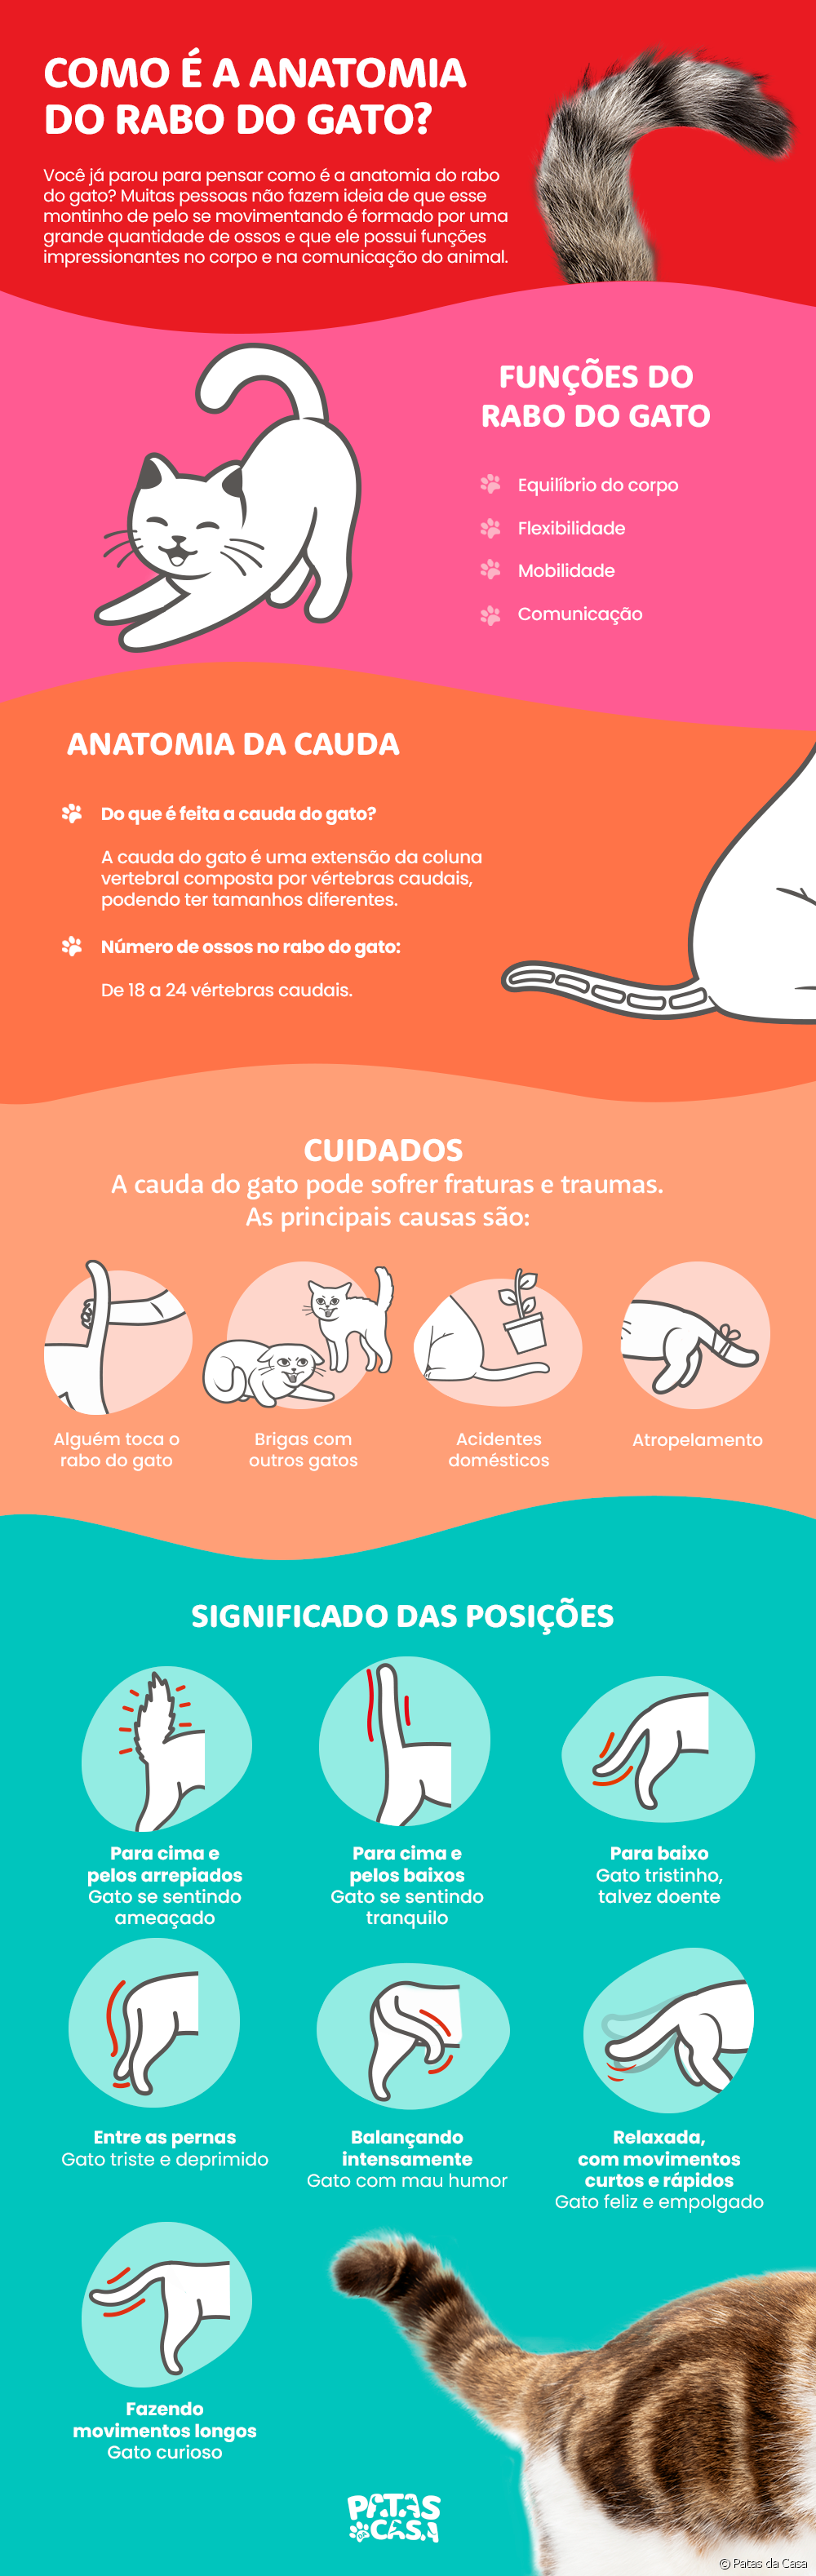  A macska farka anatómiája: infografika mutatja, hogyan néz ki a macska gerincének ez a része